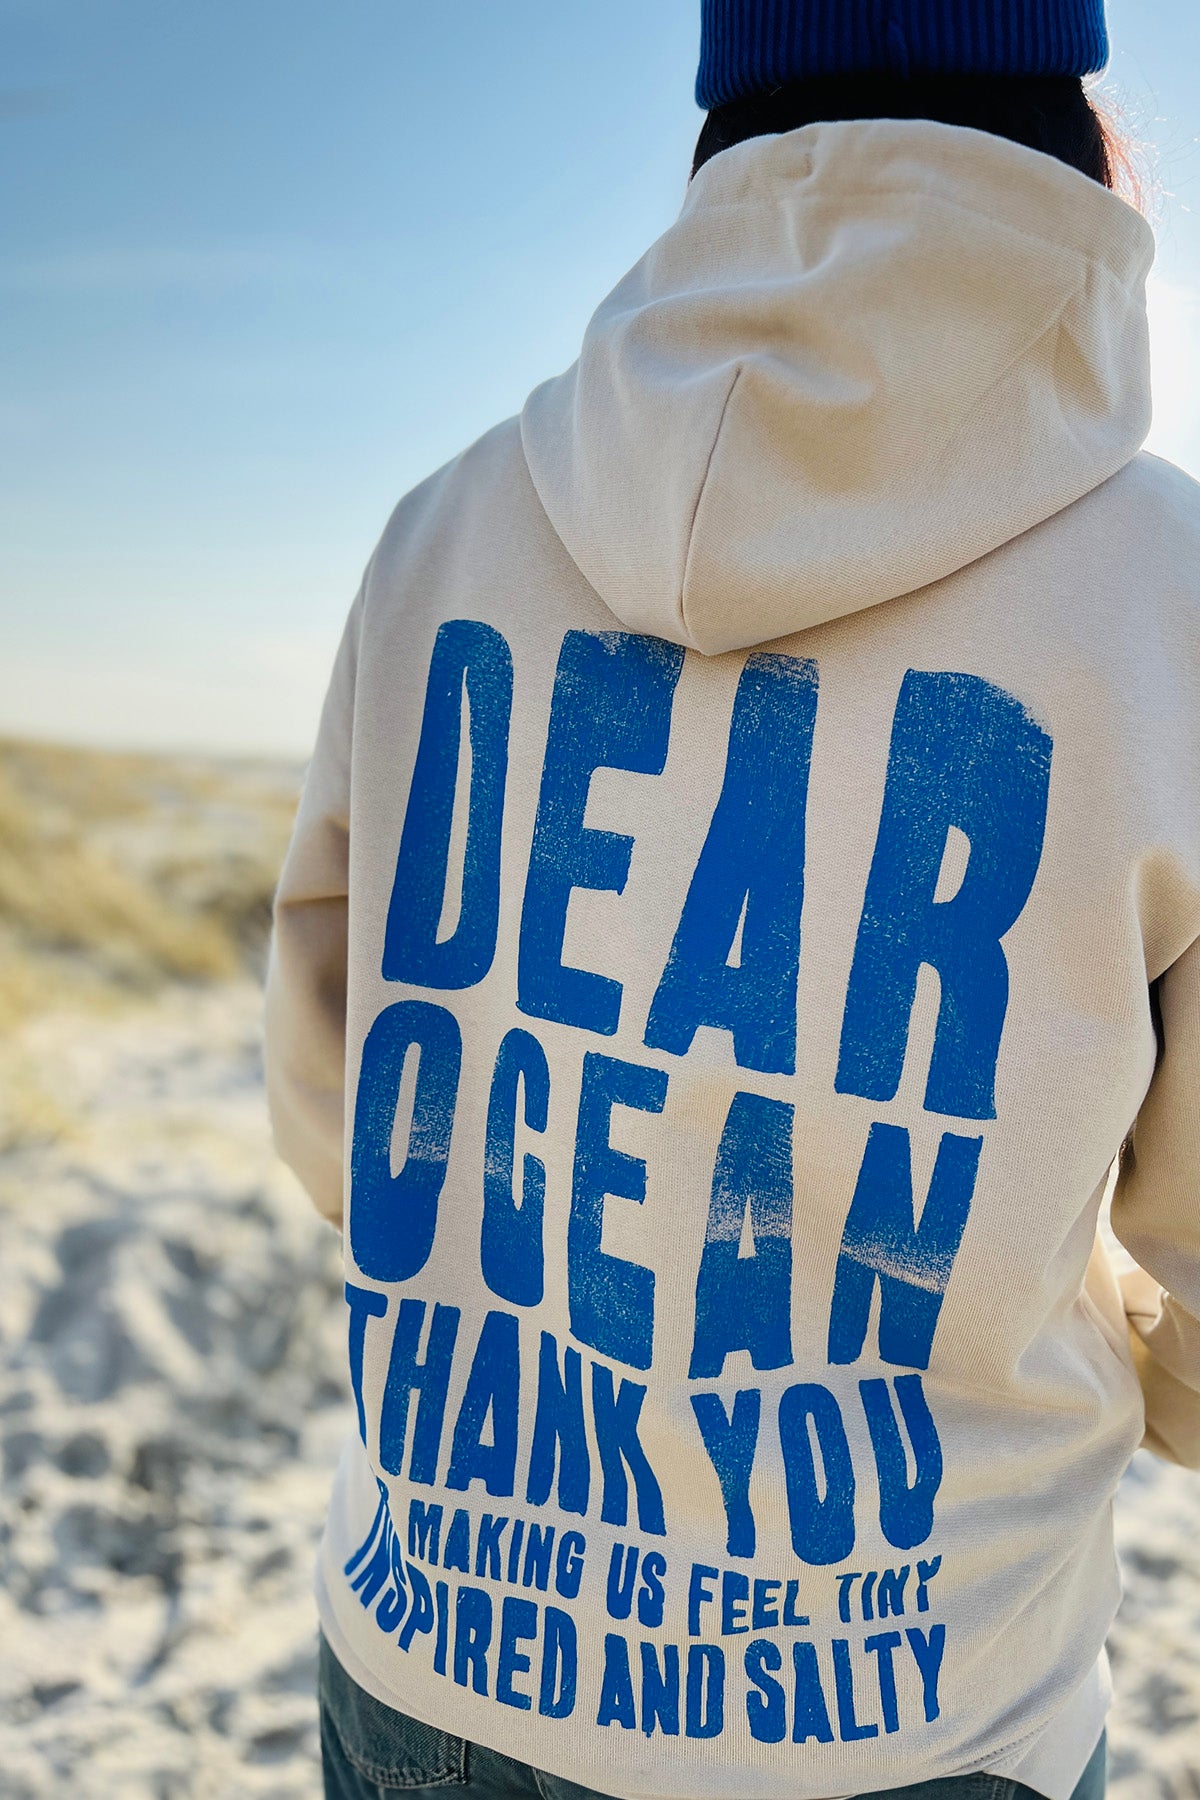 Kapuzenpullover „Dear Ocean“